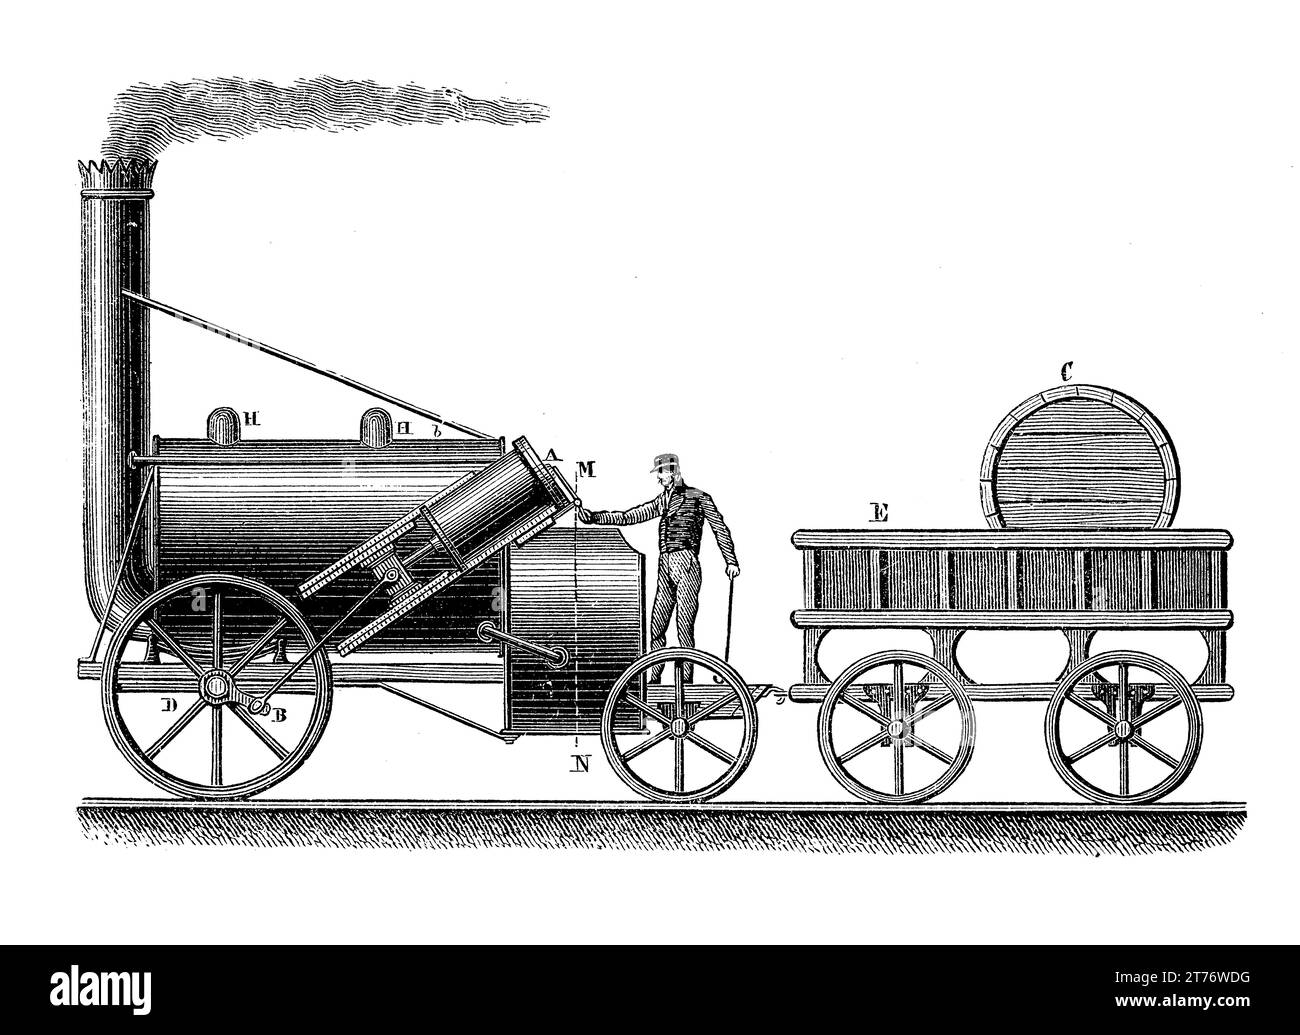 Stephensons Rocket Early Dampflokomotive für die Liverpool and Manchester Railway, die 1829 von Robert Stephenson entworfen und gebaut wurde Stockfoto